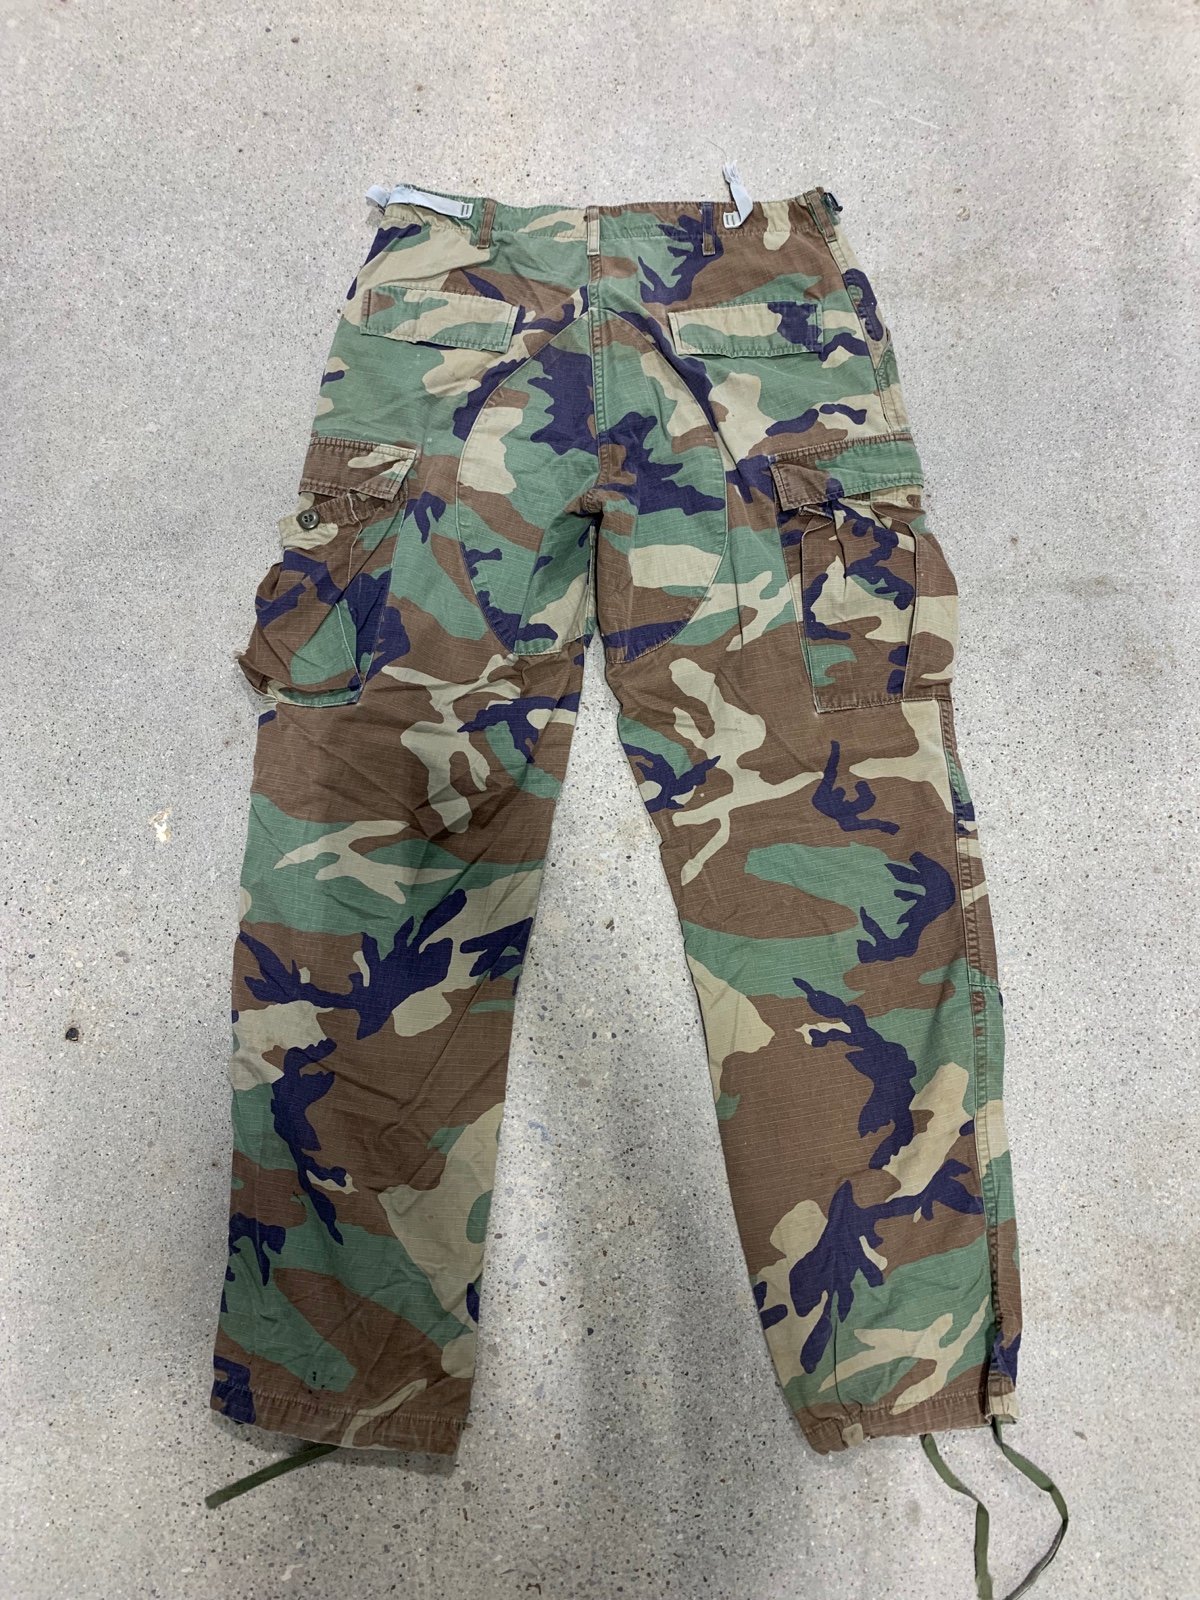 Discounted mens camo pants Mcx1QBKLz for sale